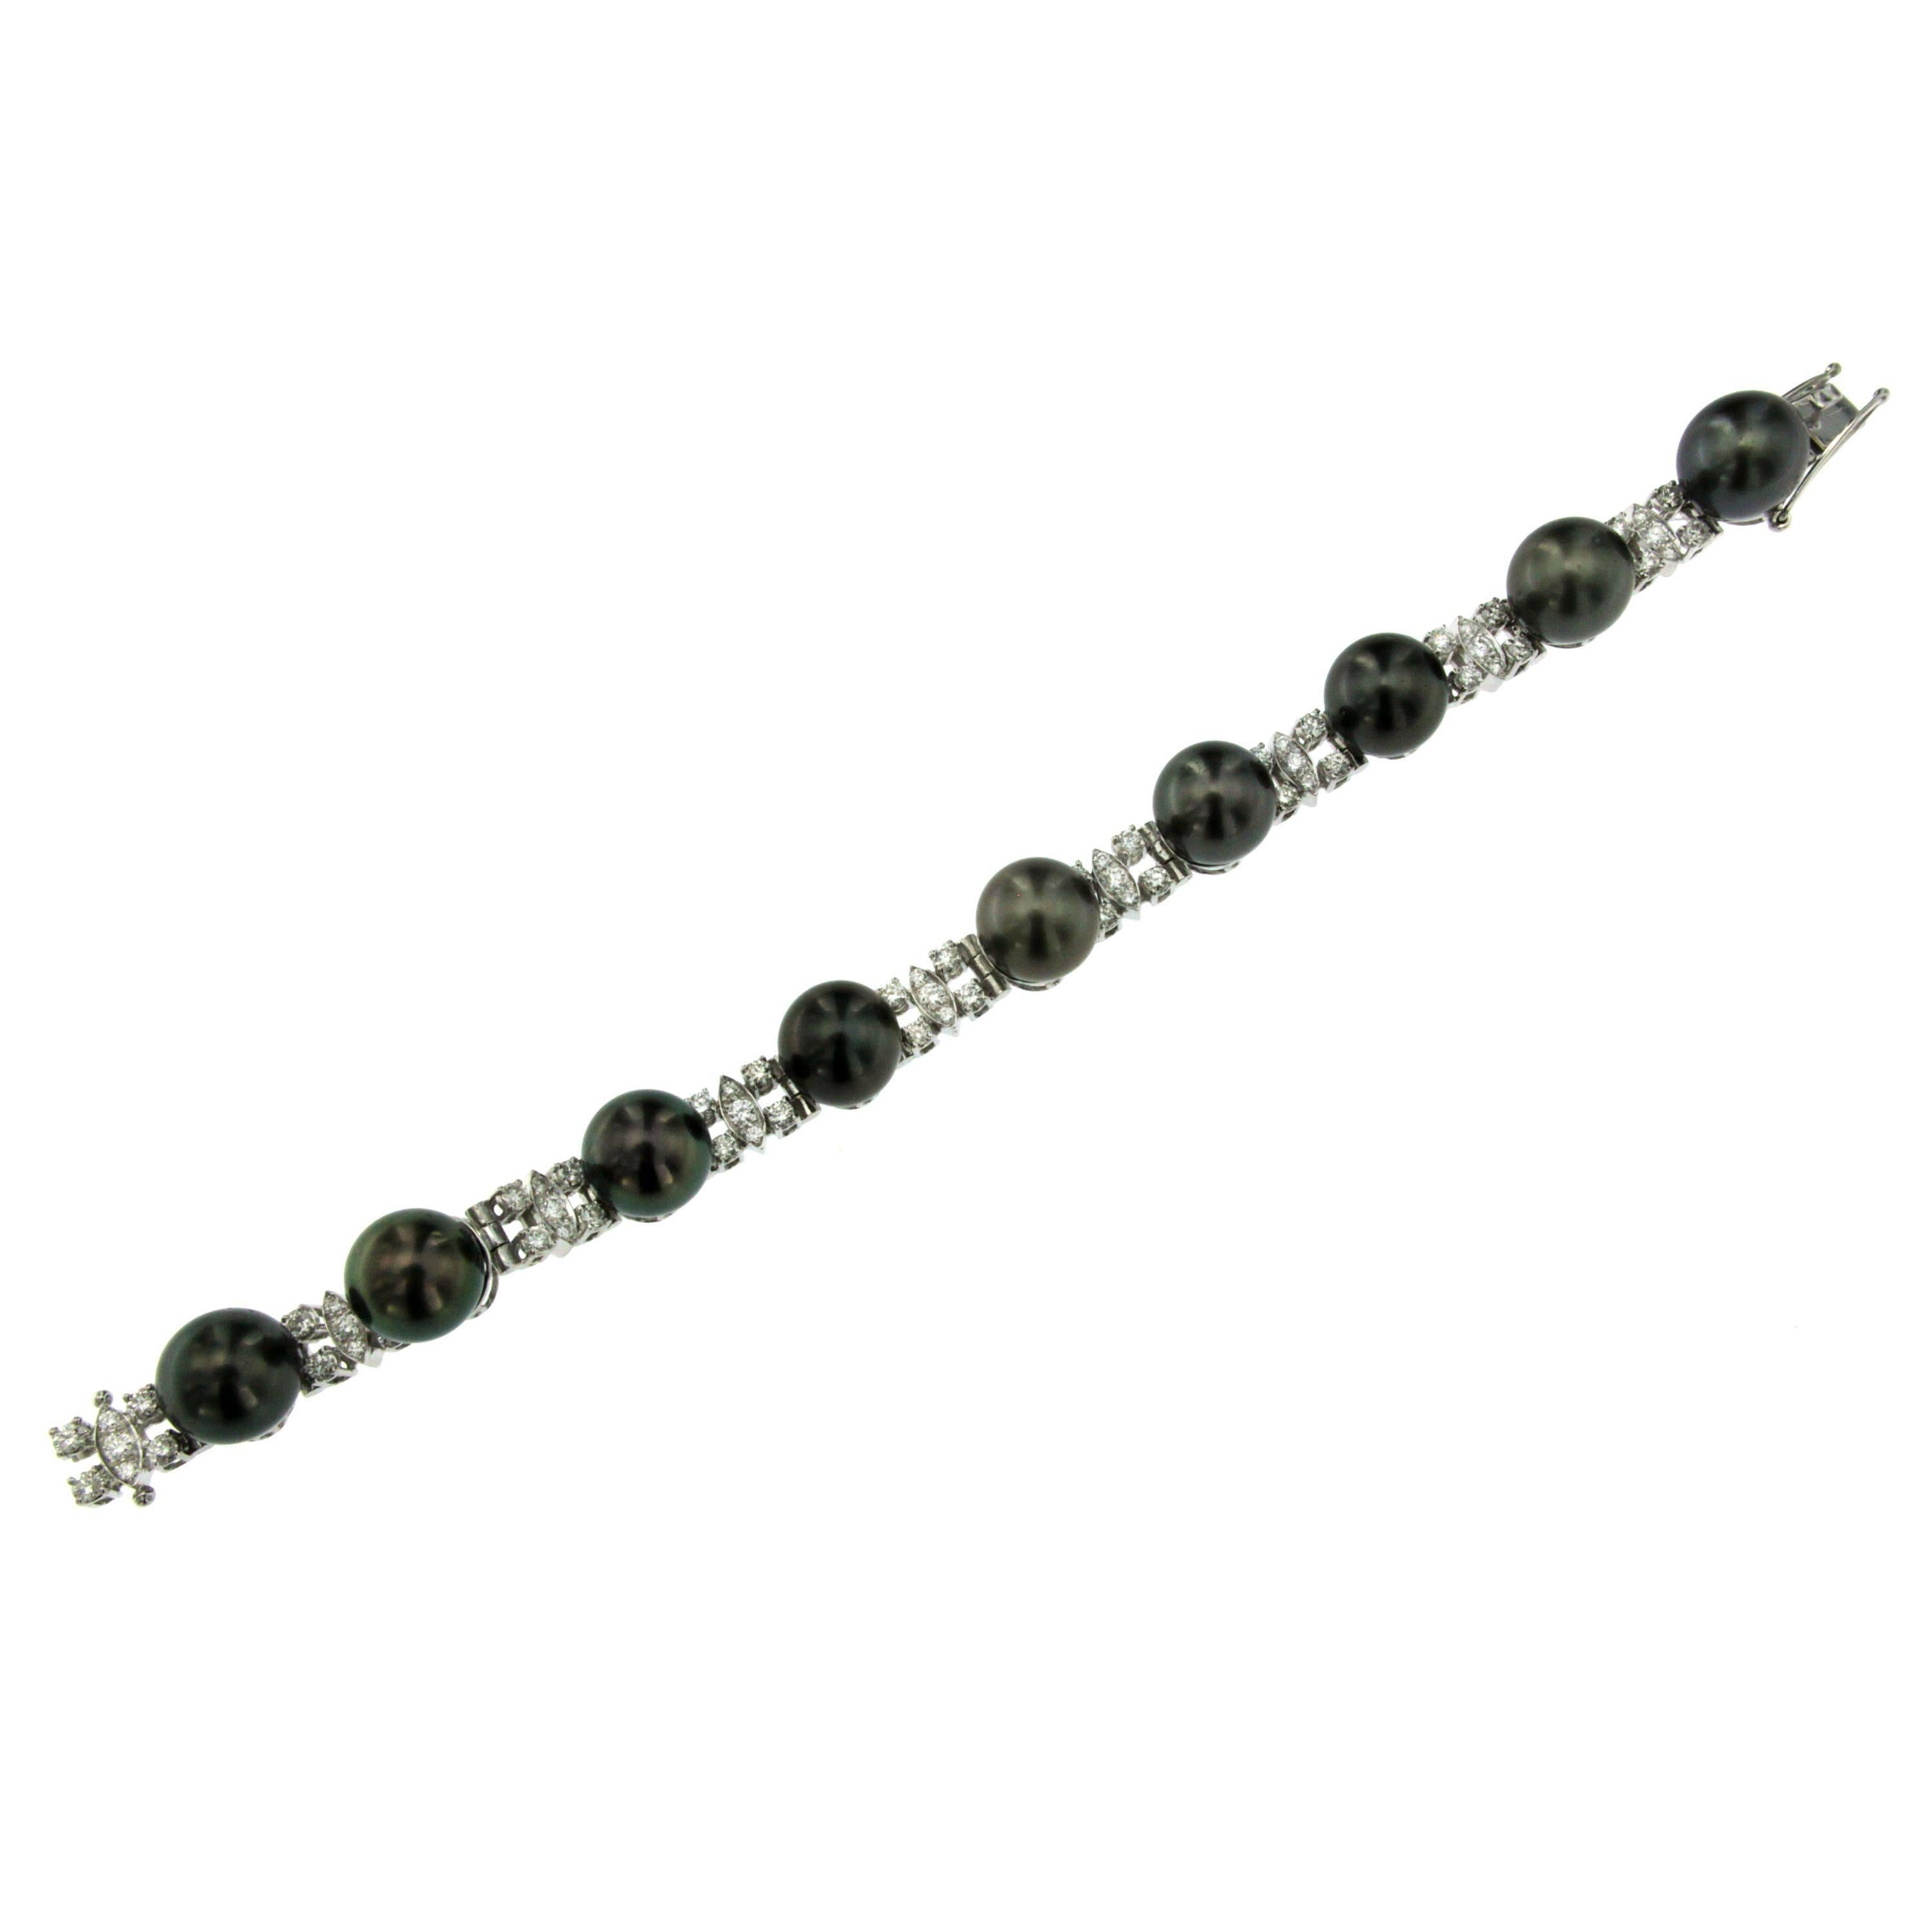 Ce magnifique bracelet est serti de diamants ronds incolores taille brillant d'environ 2,70 carats, alternant avec des perles de Tahiti noires de 11 mm.  Attrayante et merveilleusement réalisée en or blanc 18 carats. Circa 1980

ÉTAT : Usagé -